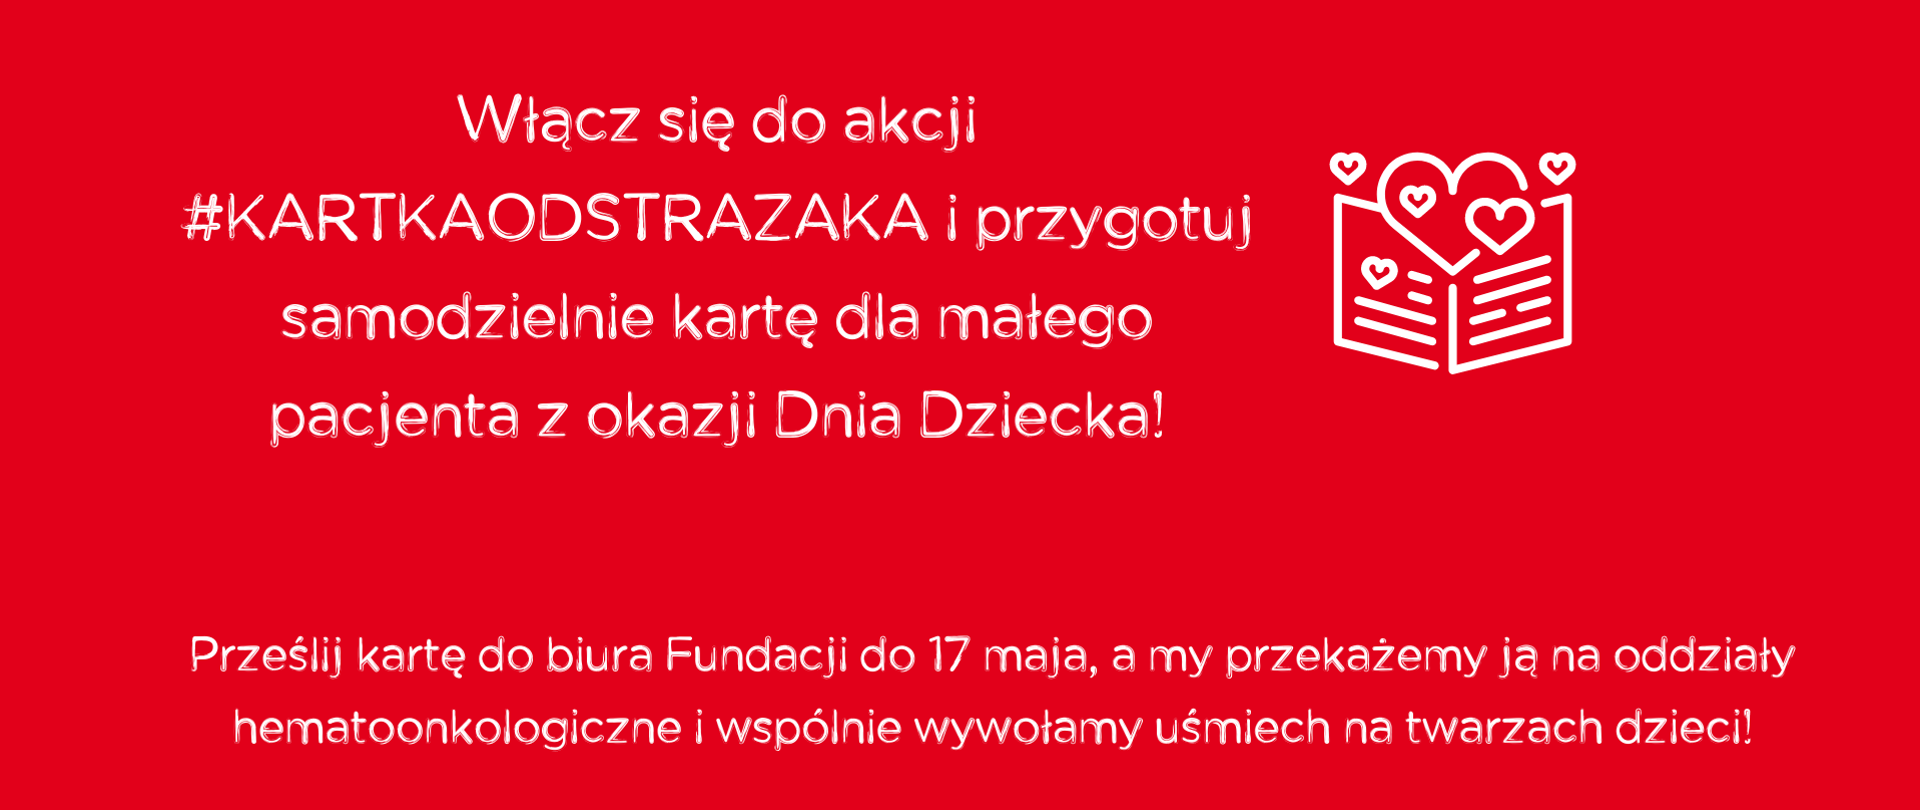 #kartkaodstrazaka – weźmy udział w akcji dla małych pacjentów
